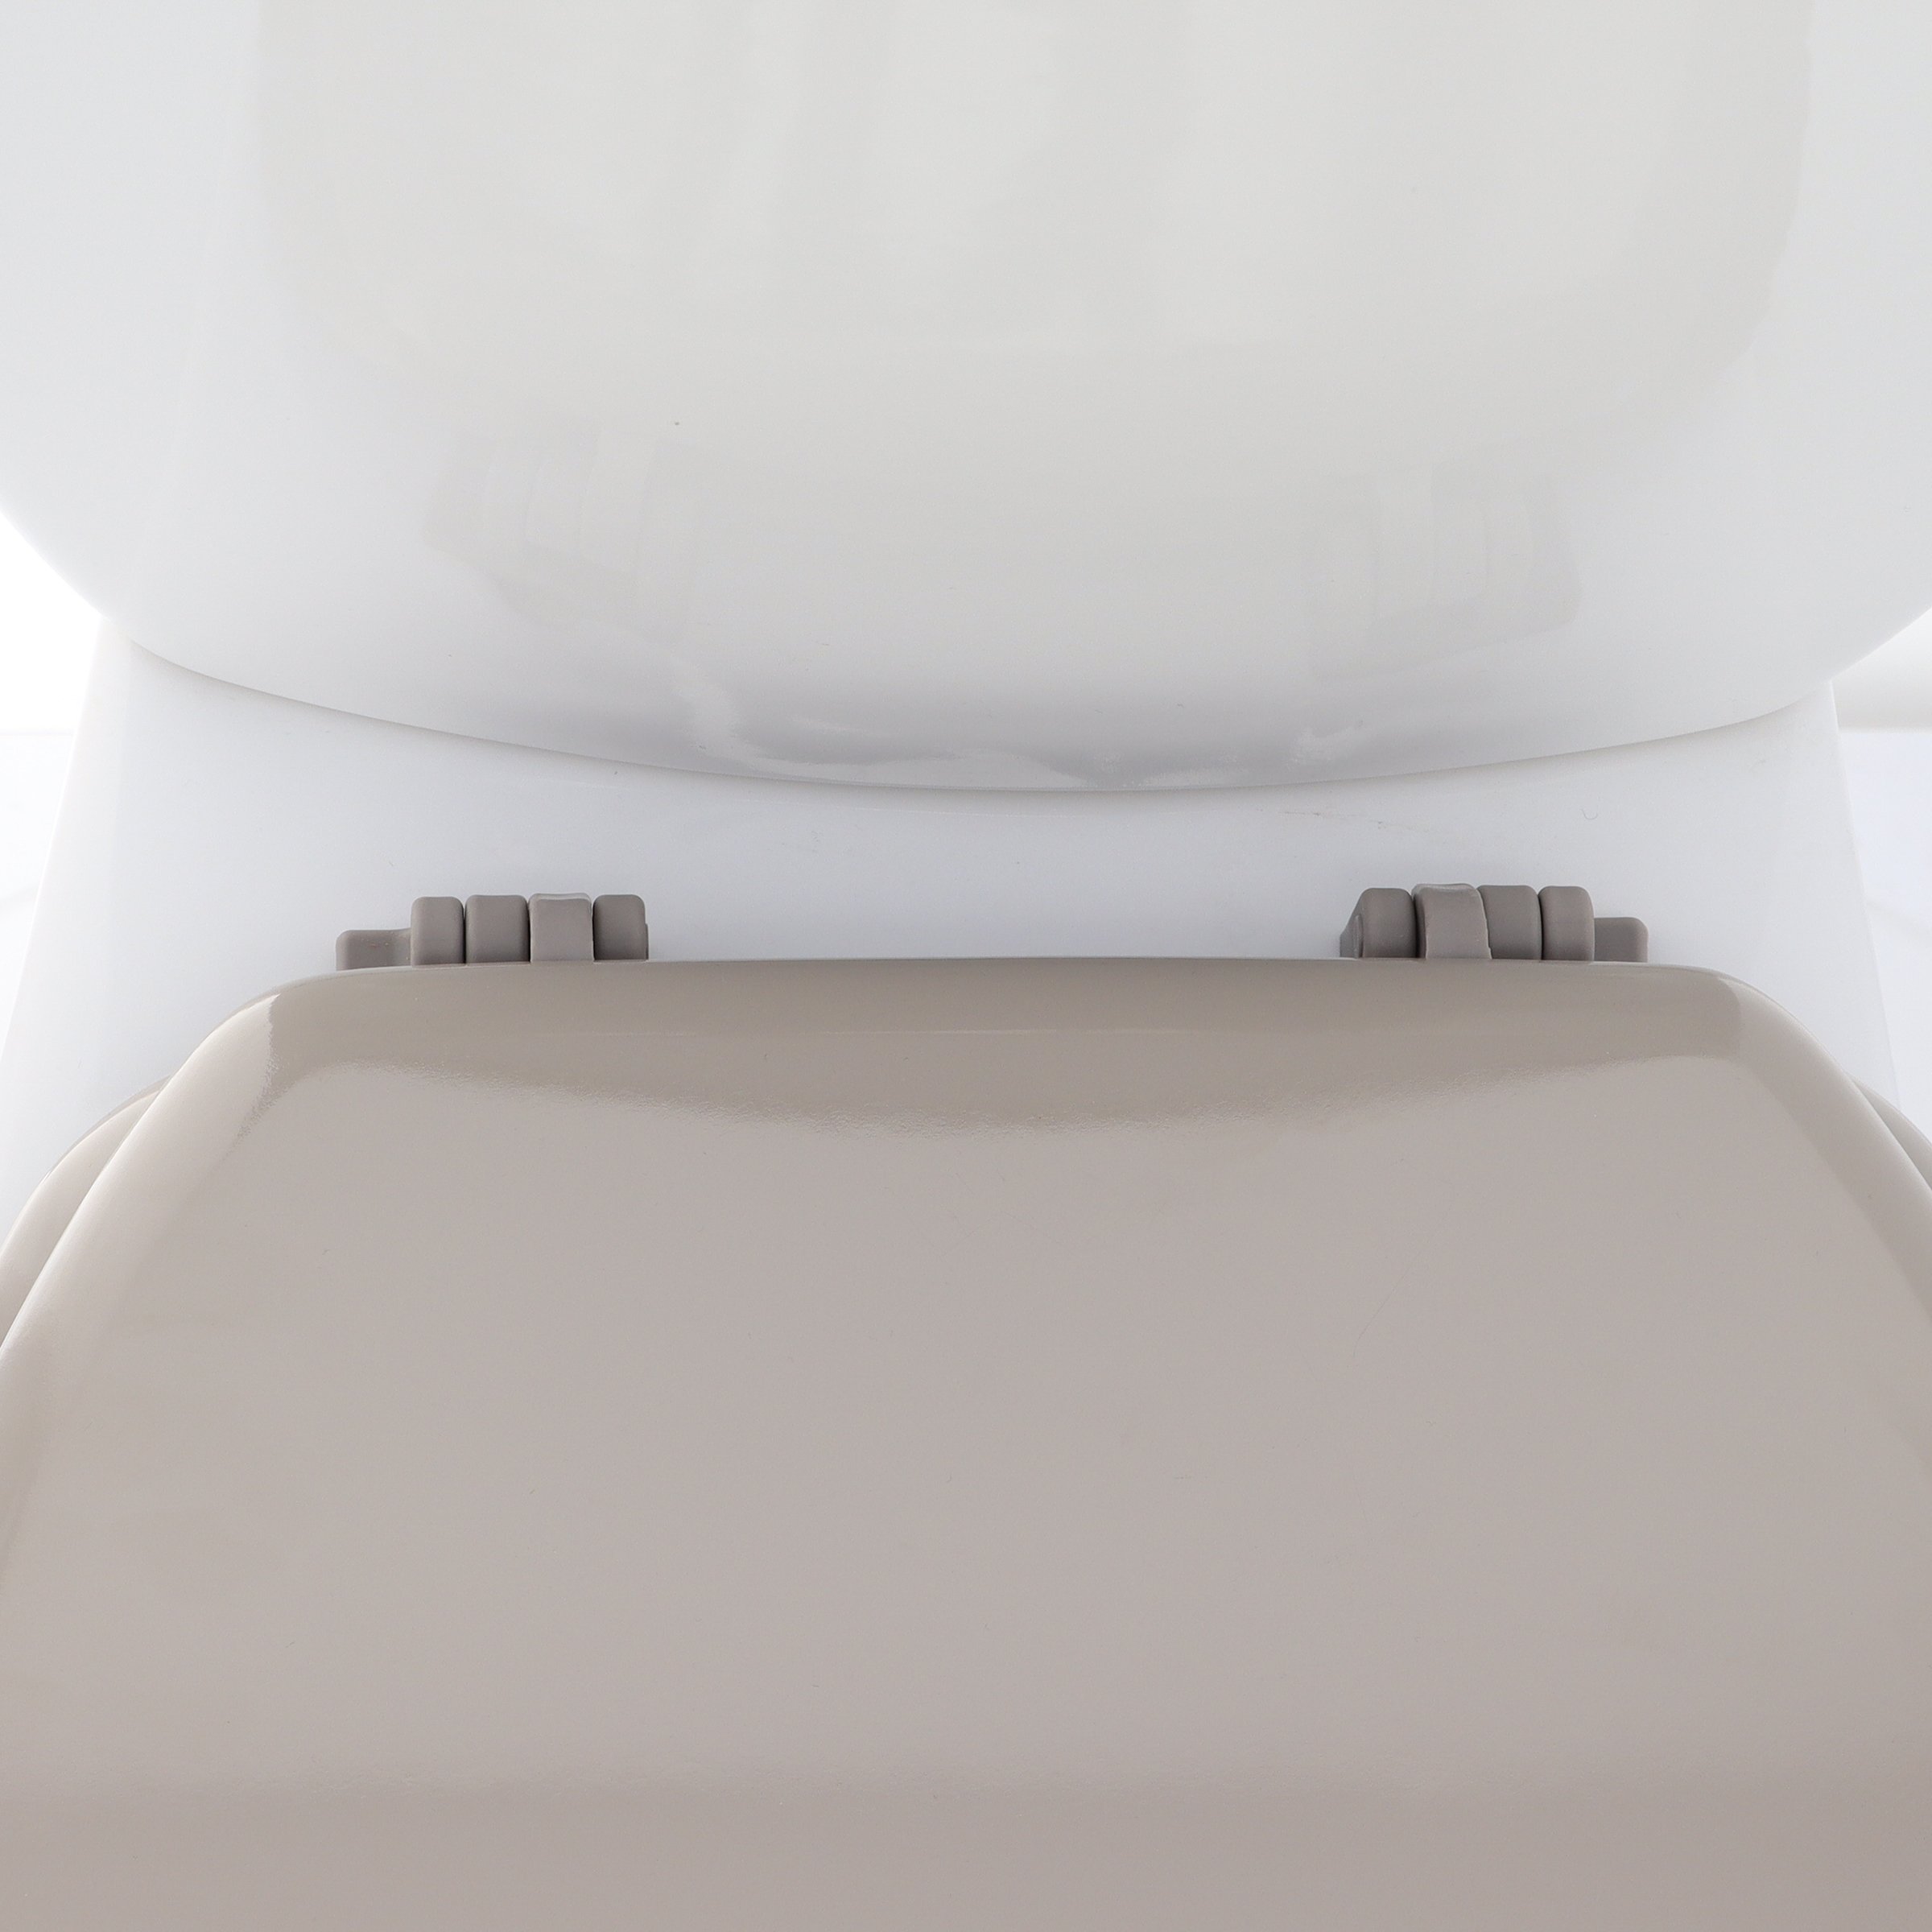 Abattant WC frein de chute Blanc - Déco salle de bain - Eminza